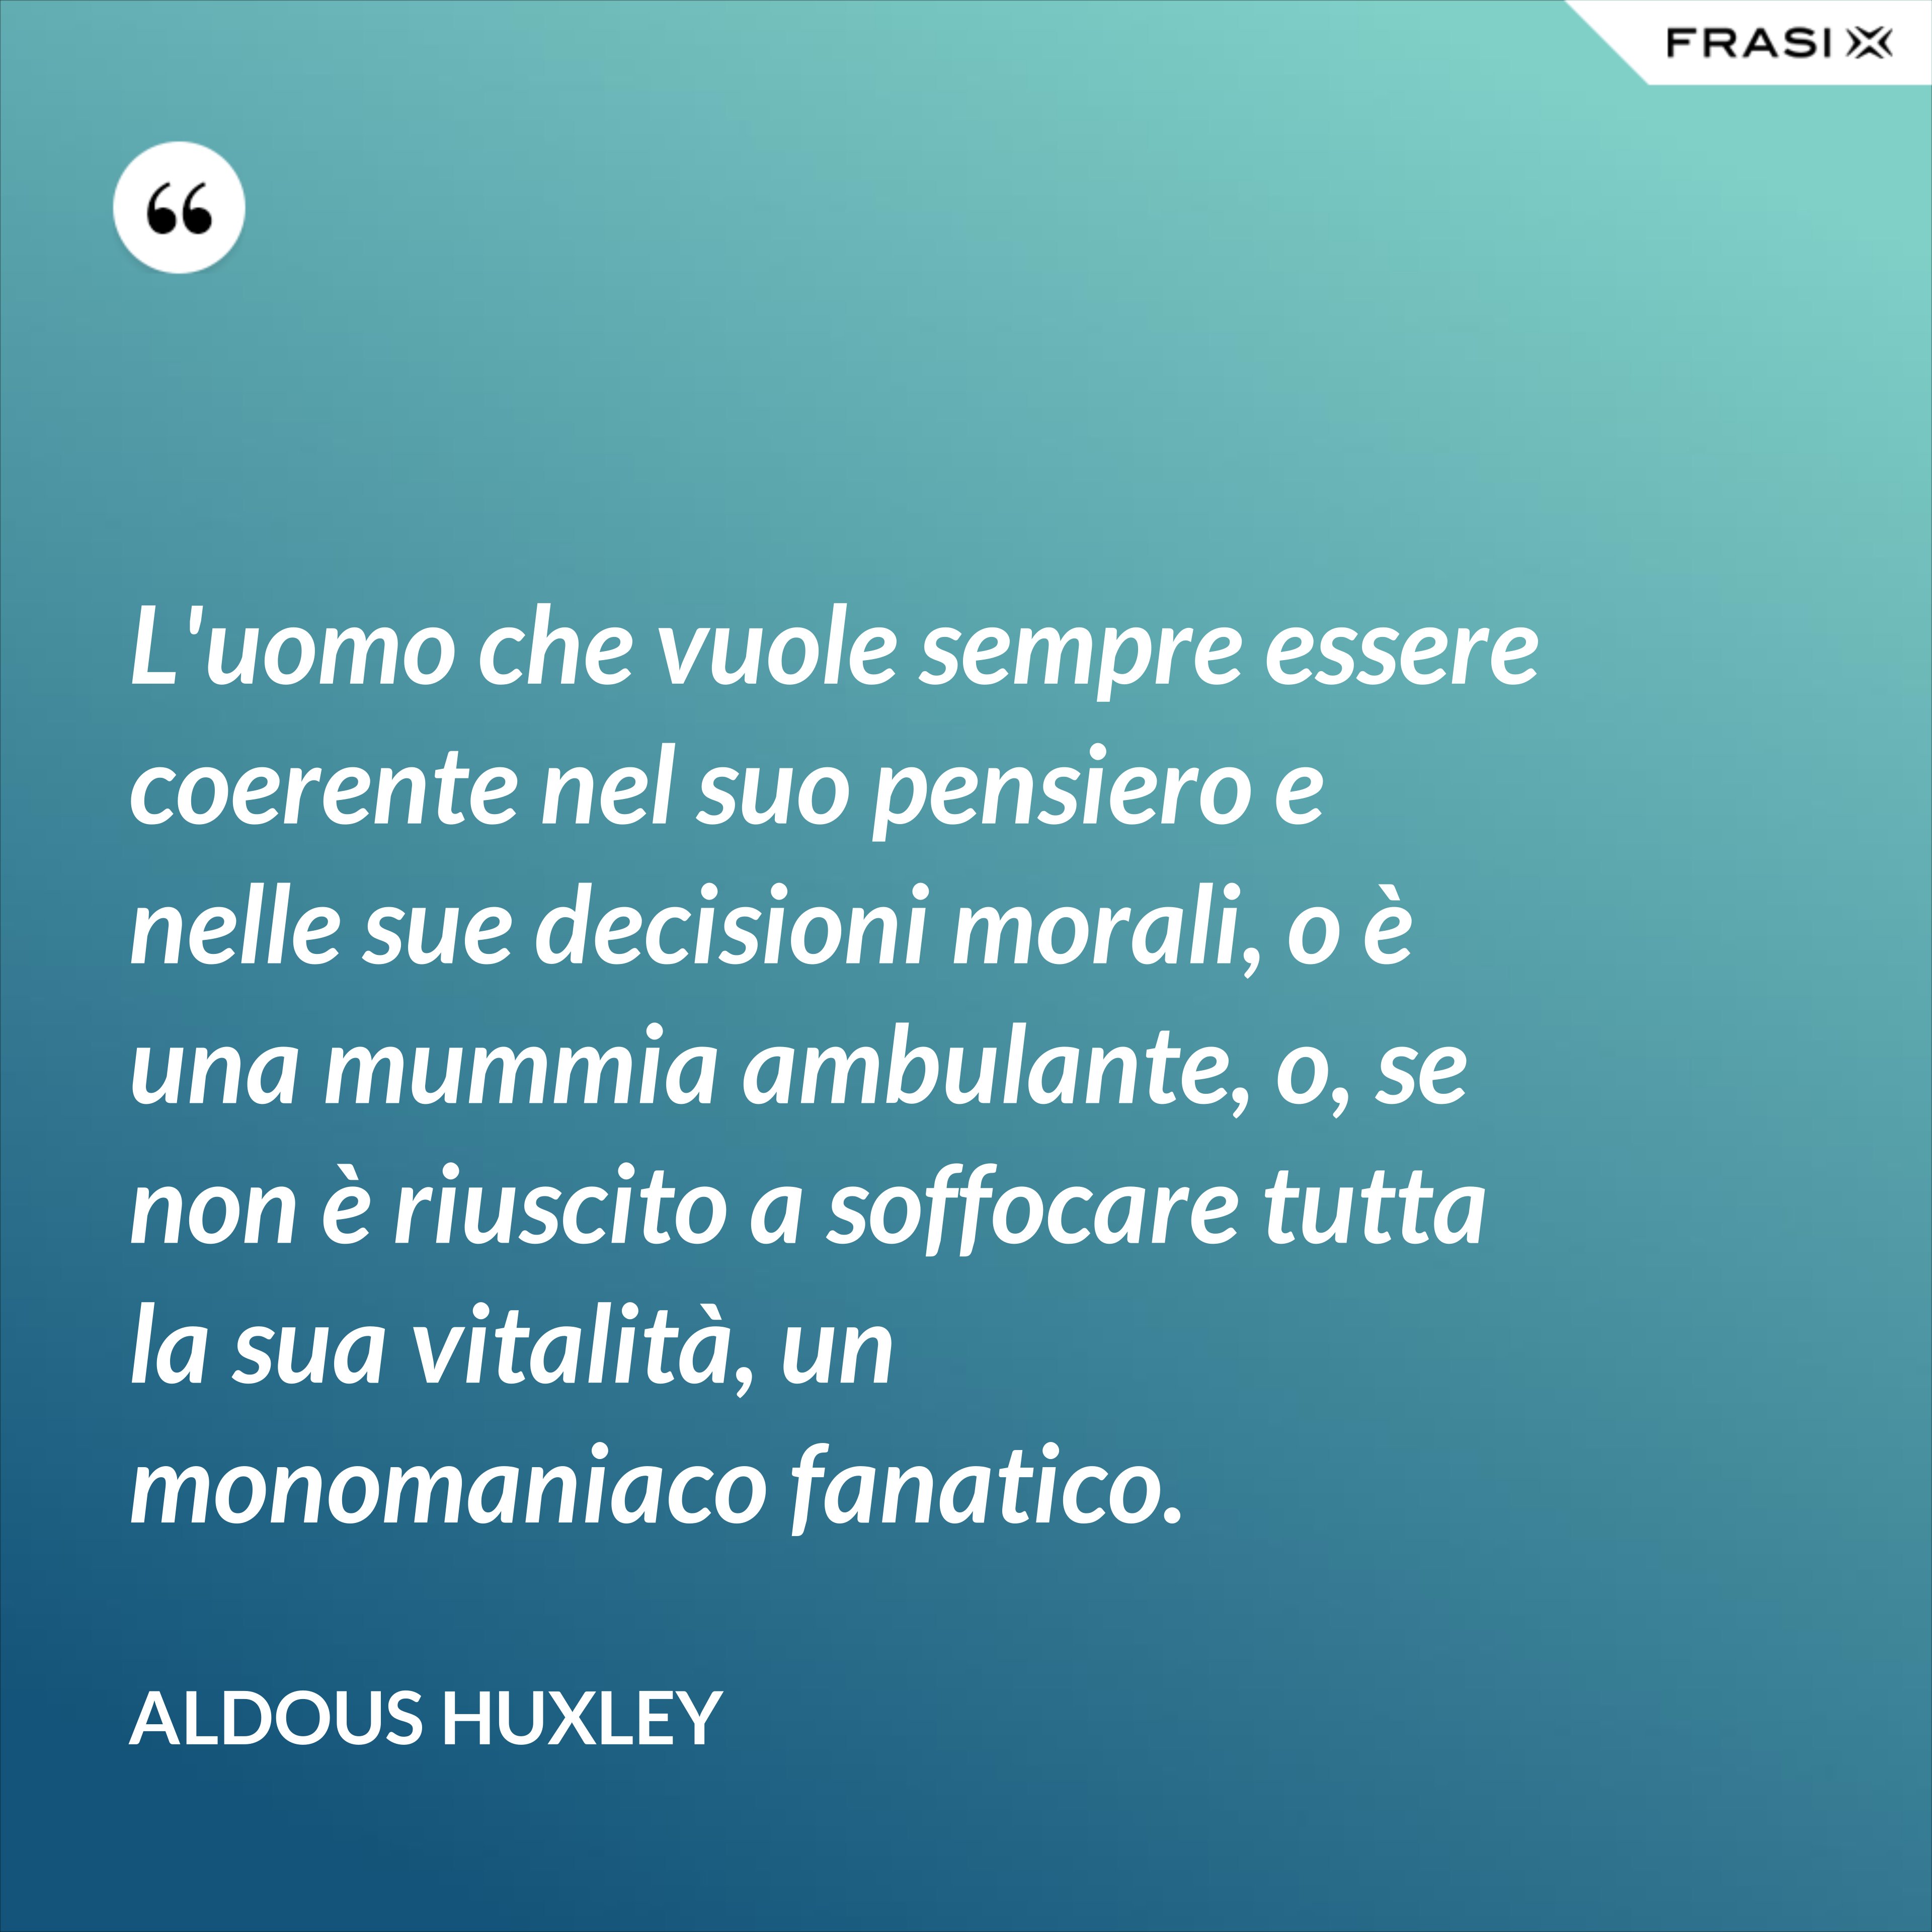 L'uomo che vuole sempre essere coerente nel suo pensiero e nelle sue decisioni morali, o è una mummia ambulante, o, se non è riuscito a soffocare tutta la sua vitalità, un monomaniaco fanatico. - Aldous Huxley